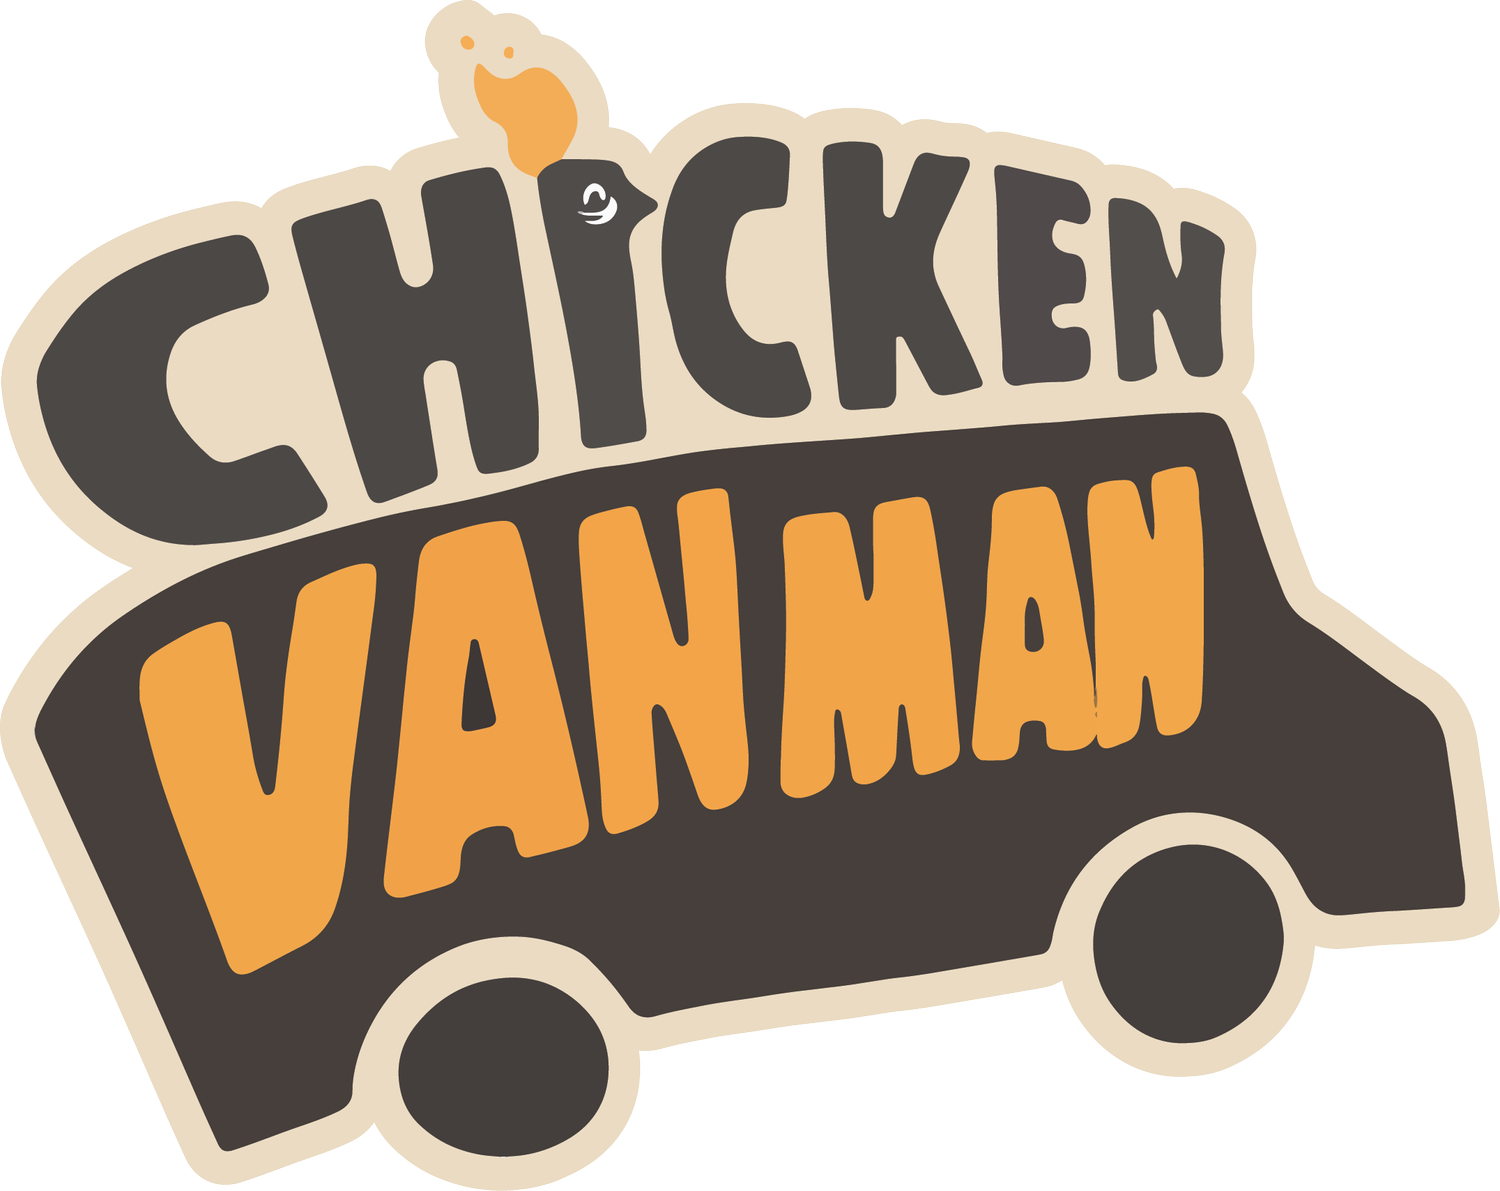 Chicken Van Man